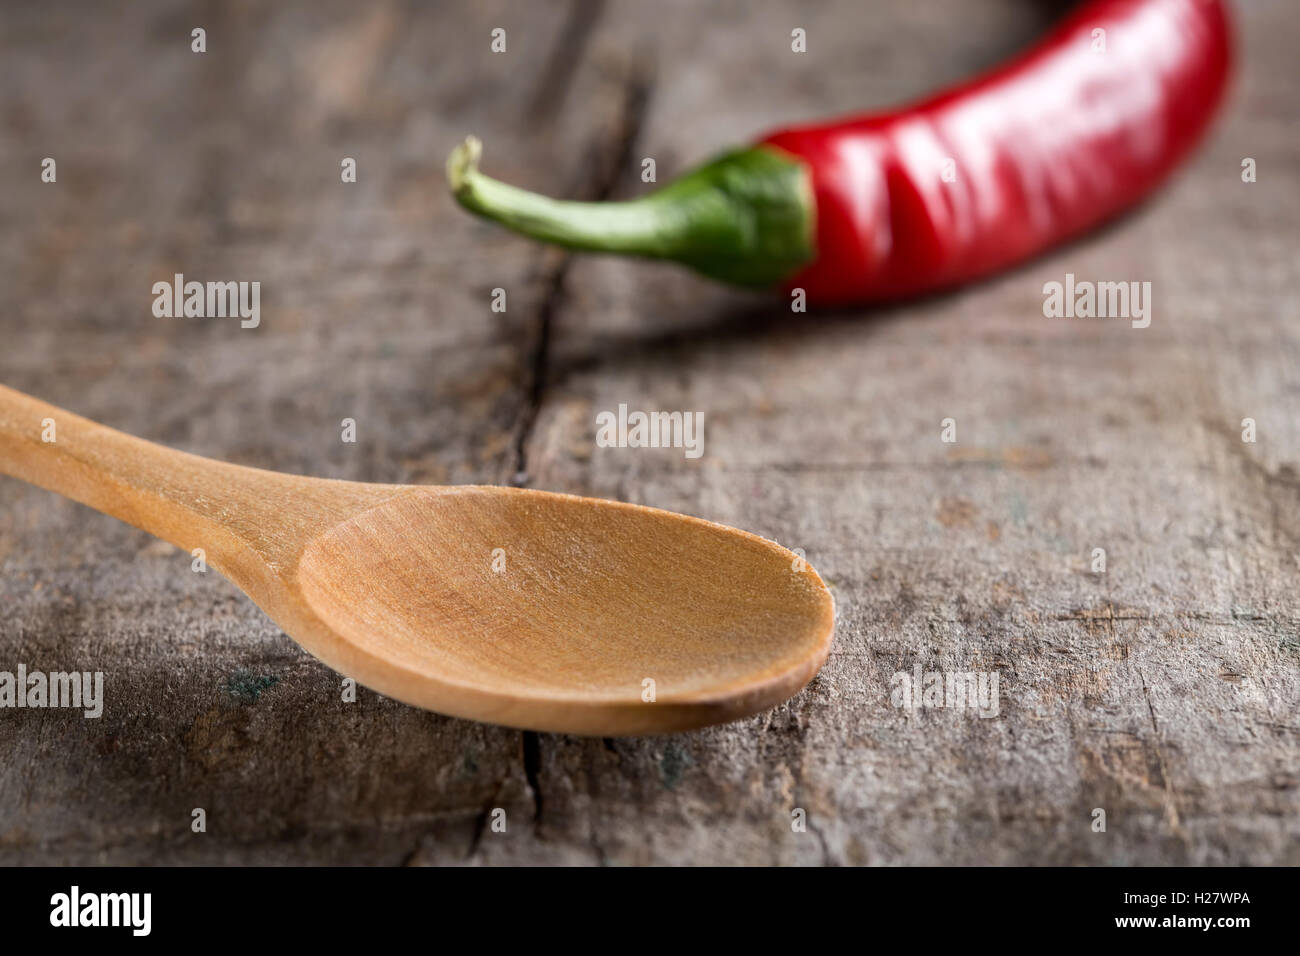 Nahaufnahme eines leeren Holzlöffel auf Tisch und eine rote Paprika im Hintergrund Stockfoto